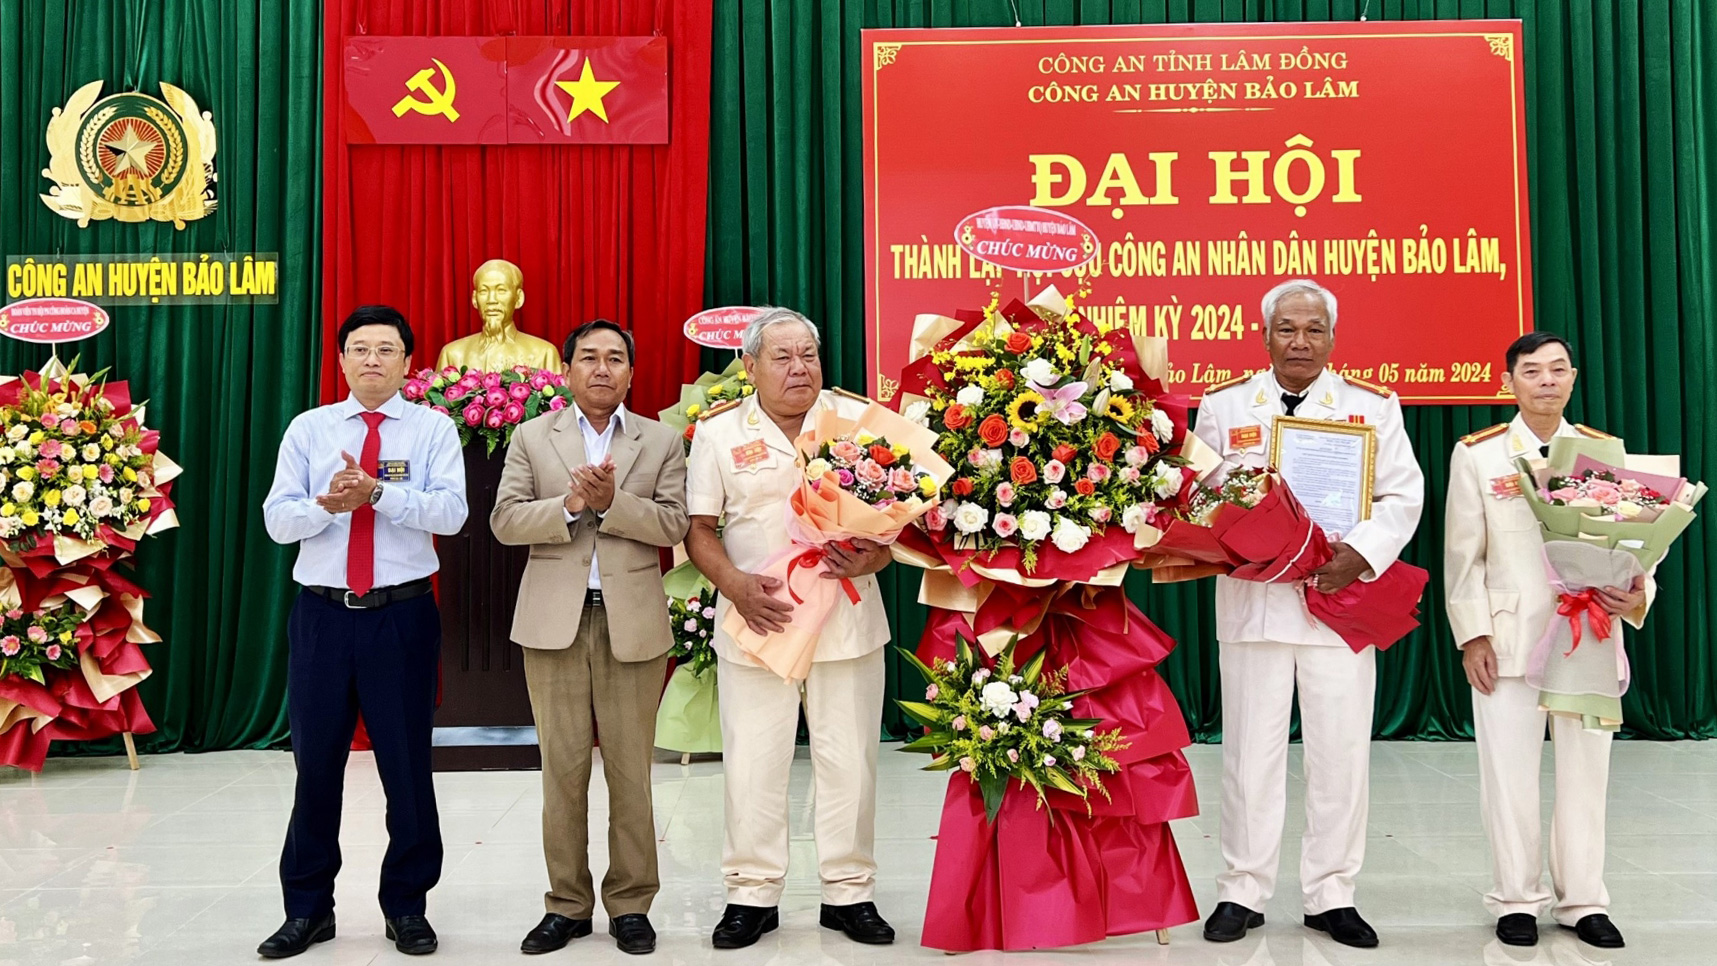 Lãnh đạo huyện Bảo Lâm trao Quyết định thành lập Hội Cựu CAND huyện và tặng hoa chúc mừng Đại hội